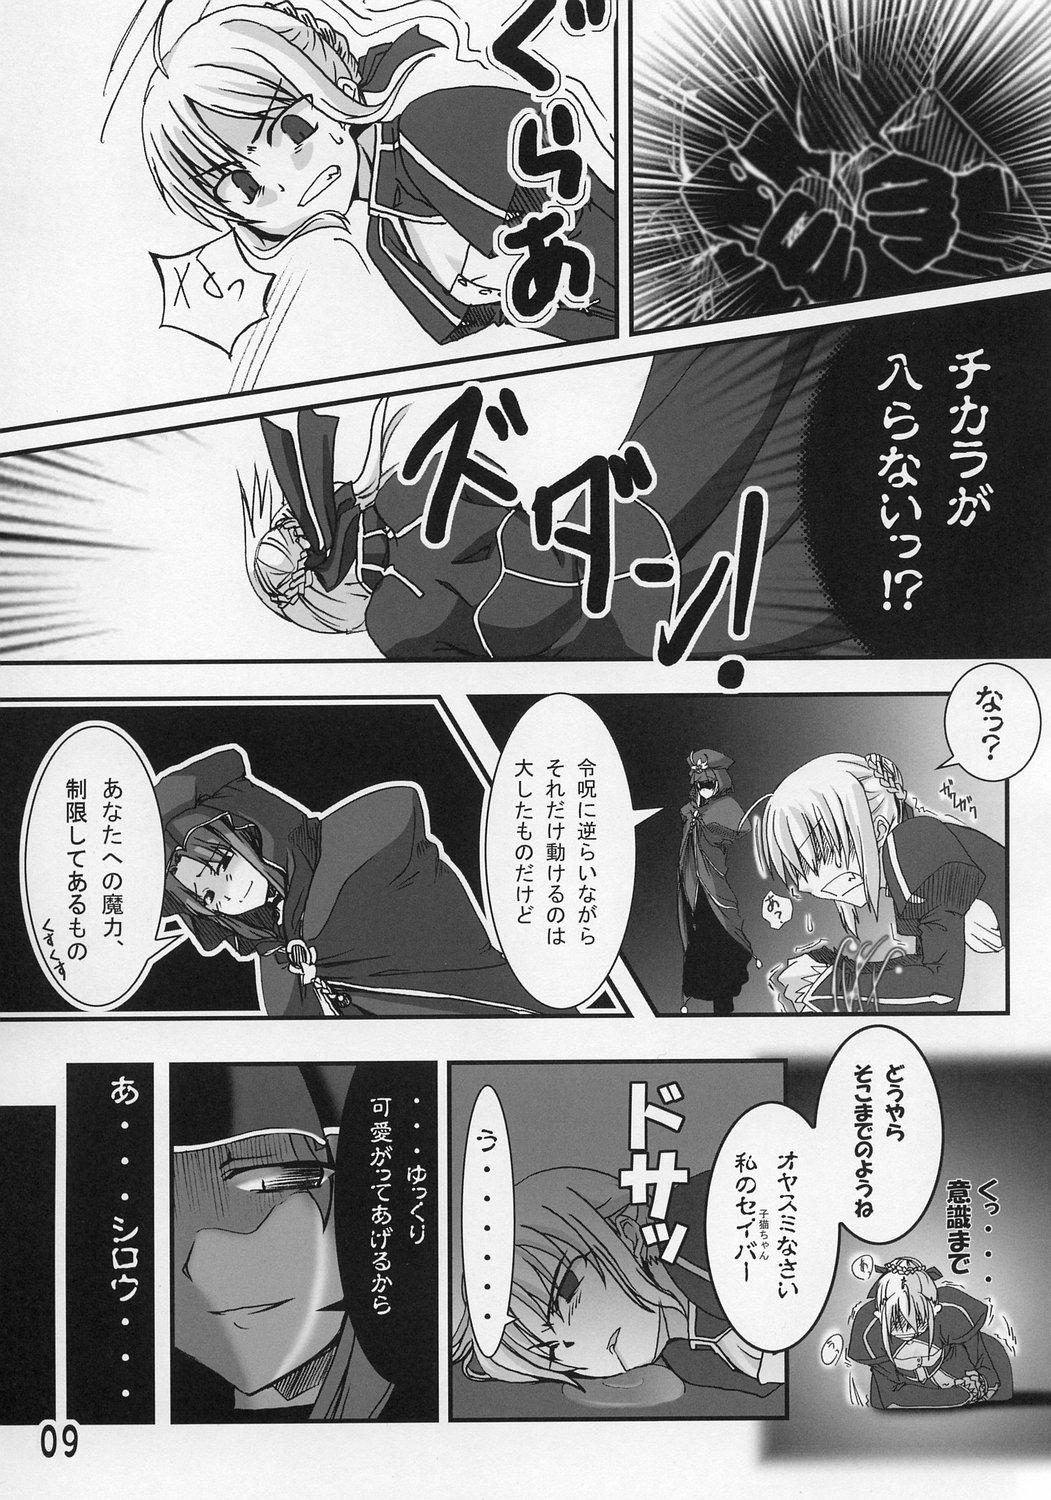 Publico Ousama no Kakushigoto. - Fate stay night Threesome - Page 8